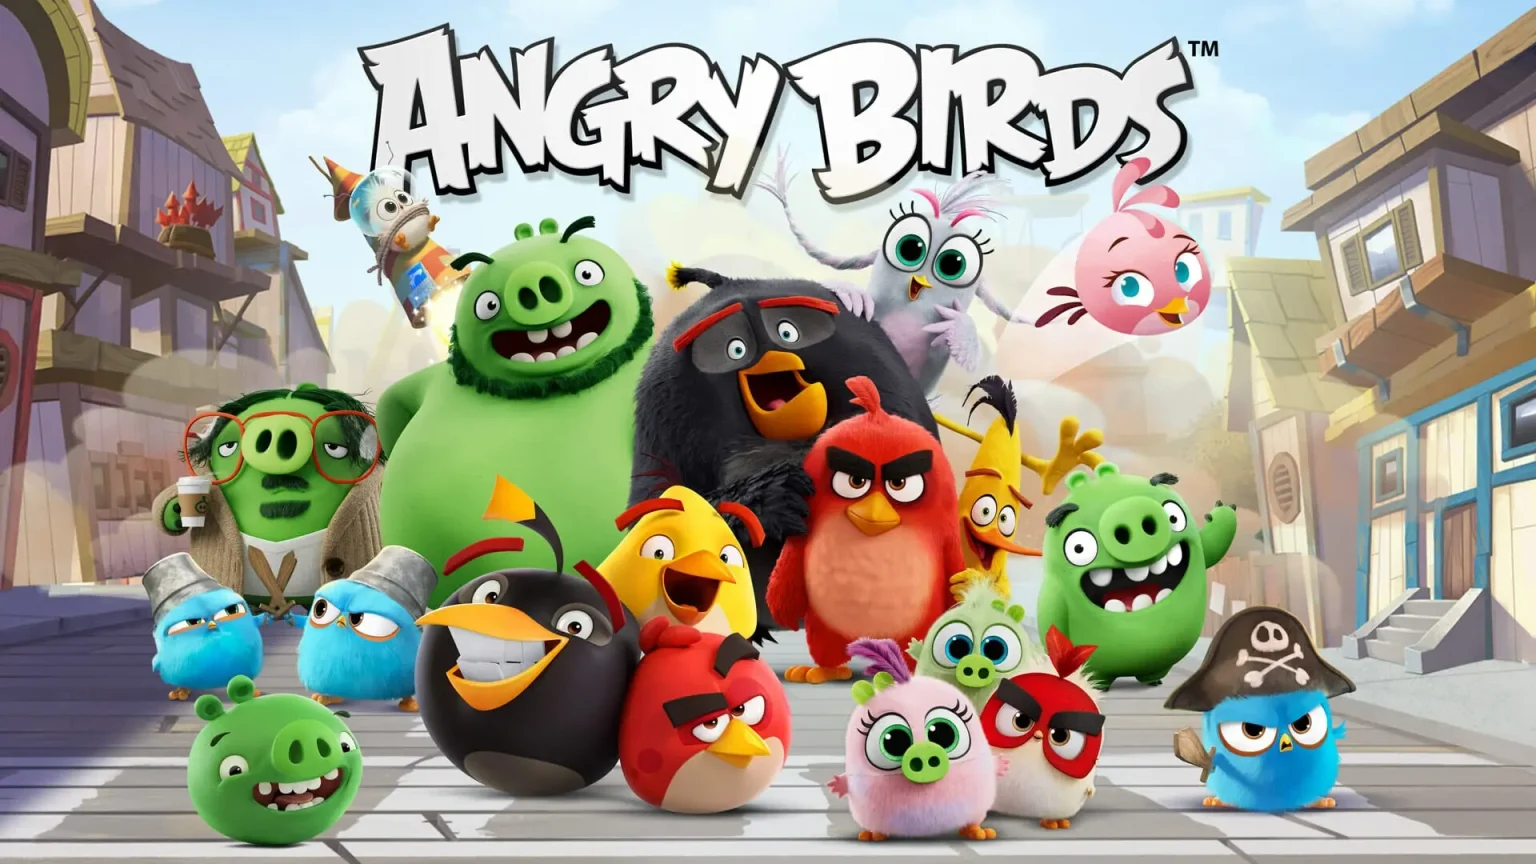 Sega, Angry Birds’ün yaratıcısı Rovio Entartainment’ı 706 milyon euroya satın aldı